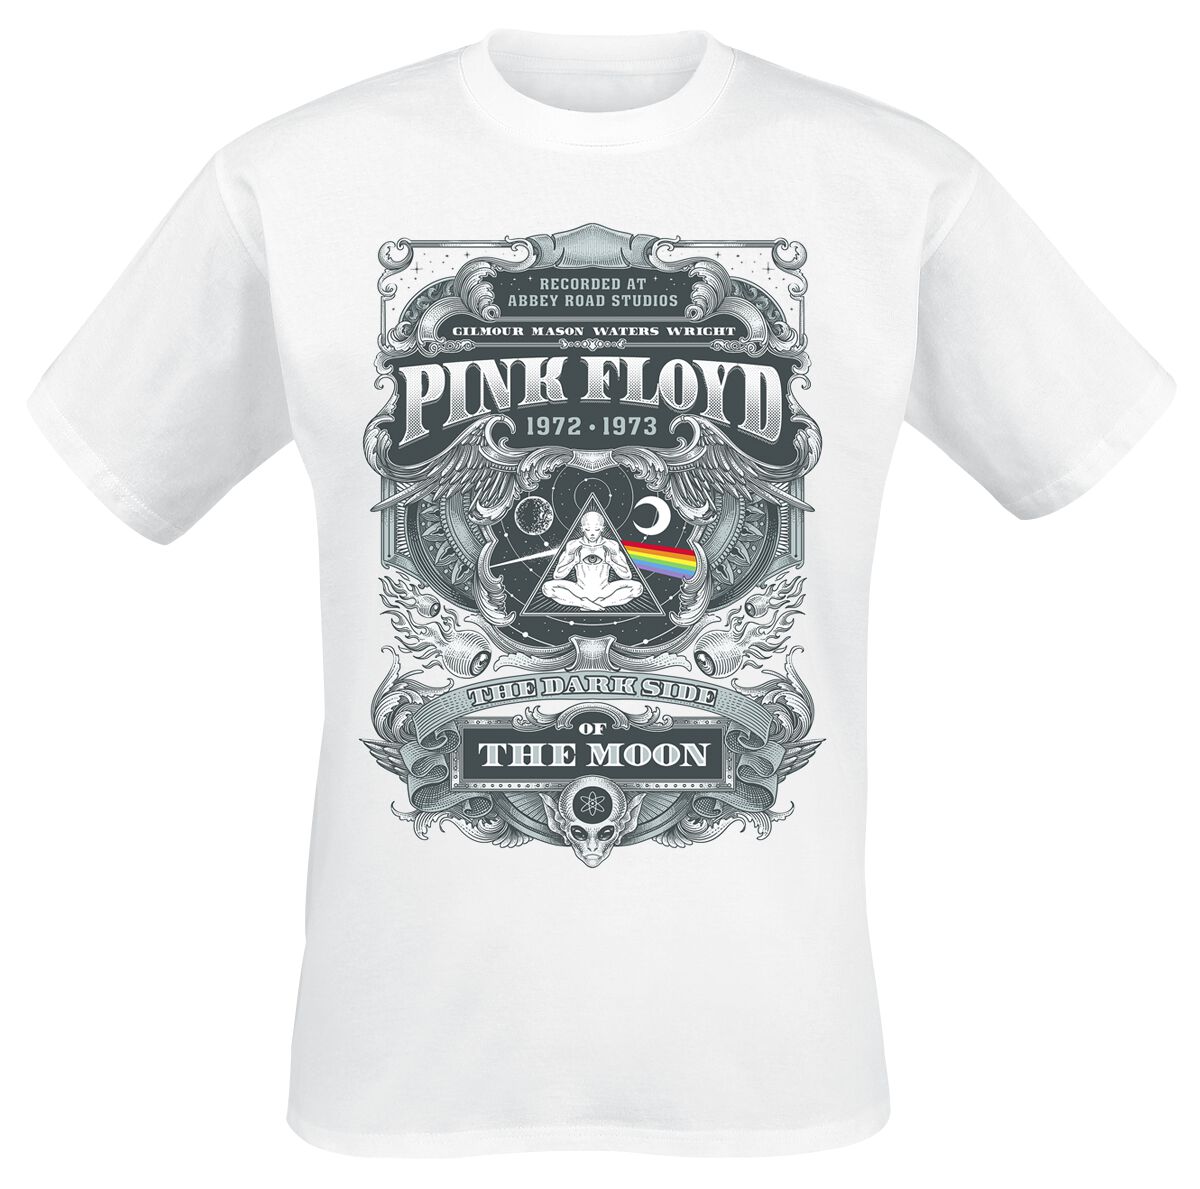 Pink Floyd T-Shirt - DSOTM 1972 - S bis 3XL - für Männer - Größe XL - weiß  - Lizenziertes Merchandise!